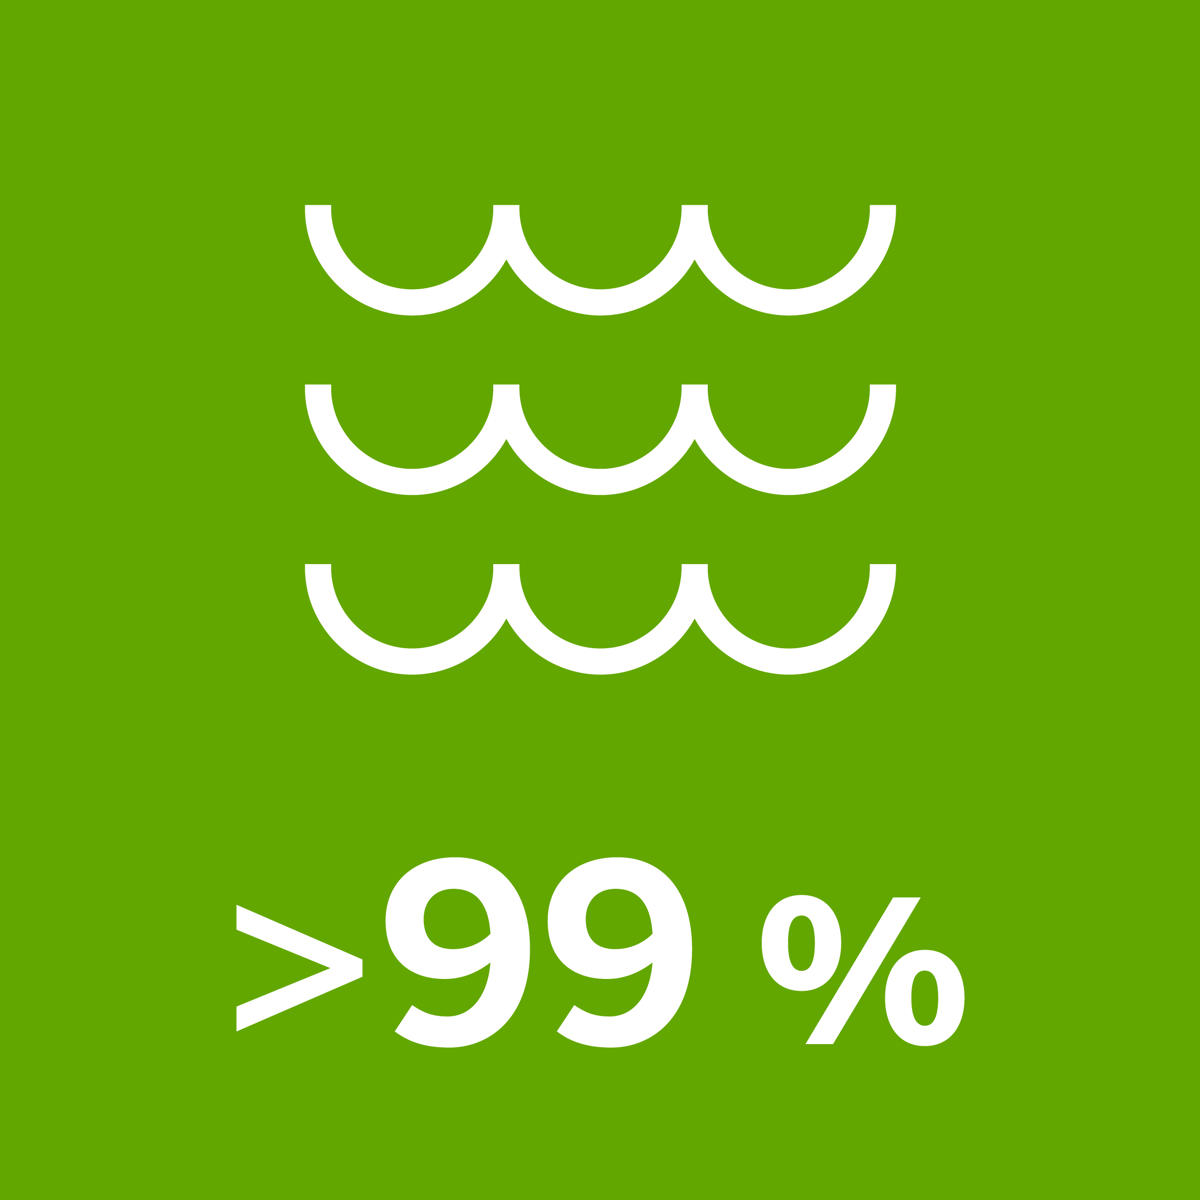 >99 % käyttämästämme vedestä on pintavettä järvistä ja joista.